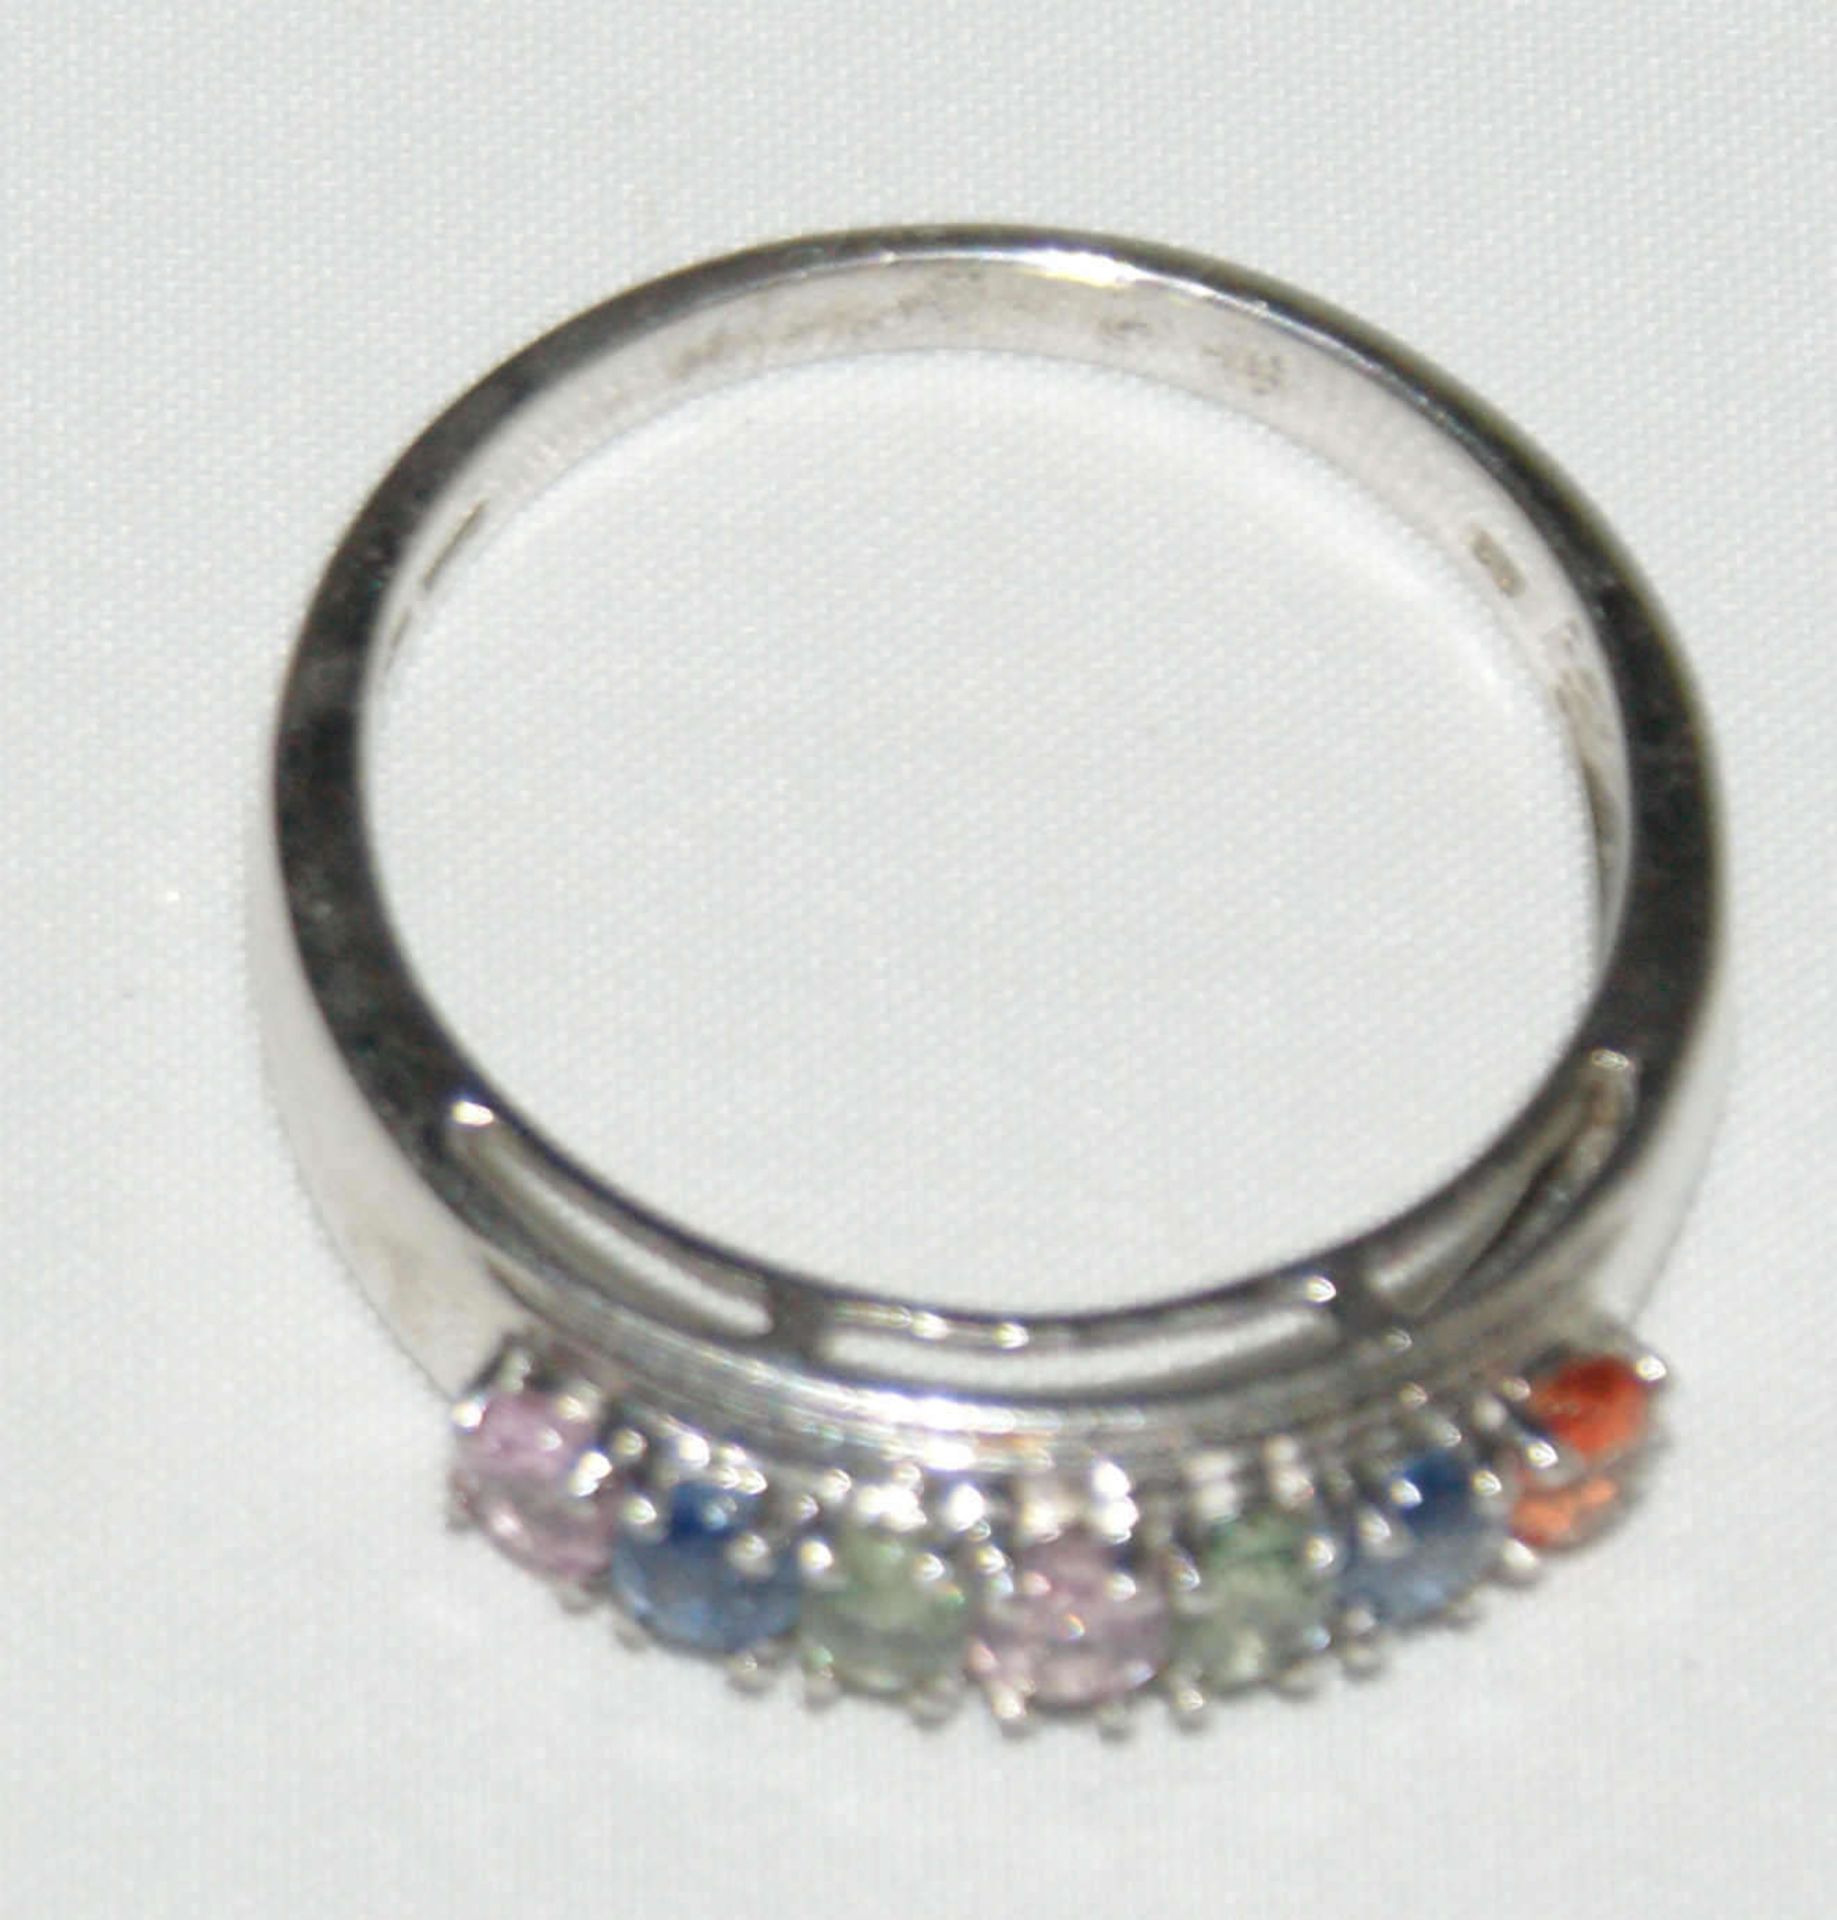 925er Silberring mit verschiedenen Spinell, 7 verschiedenfarbige Spinell, RG 64, Gewicht 4,20 g, - Bild 2 aus 2